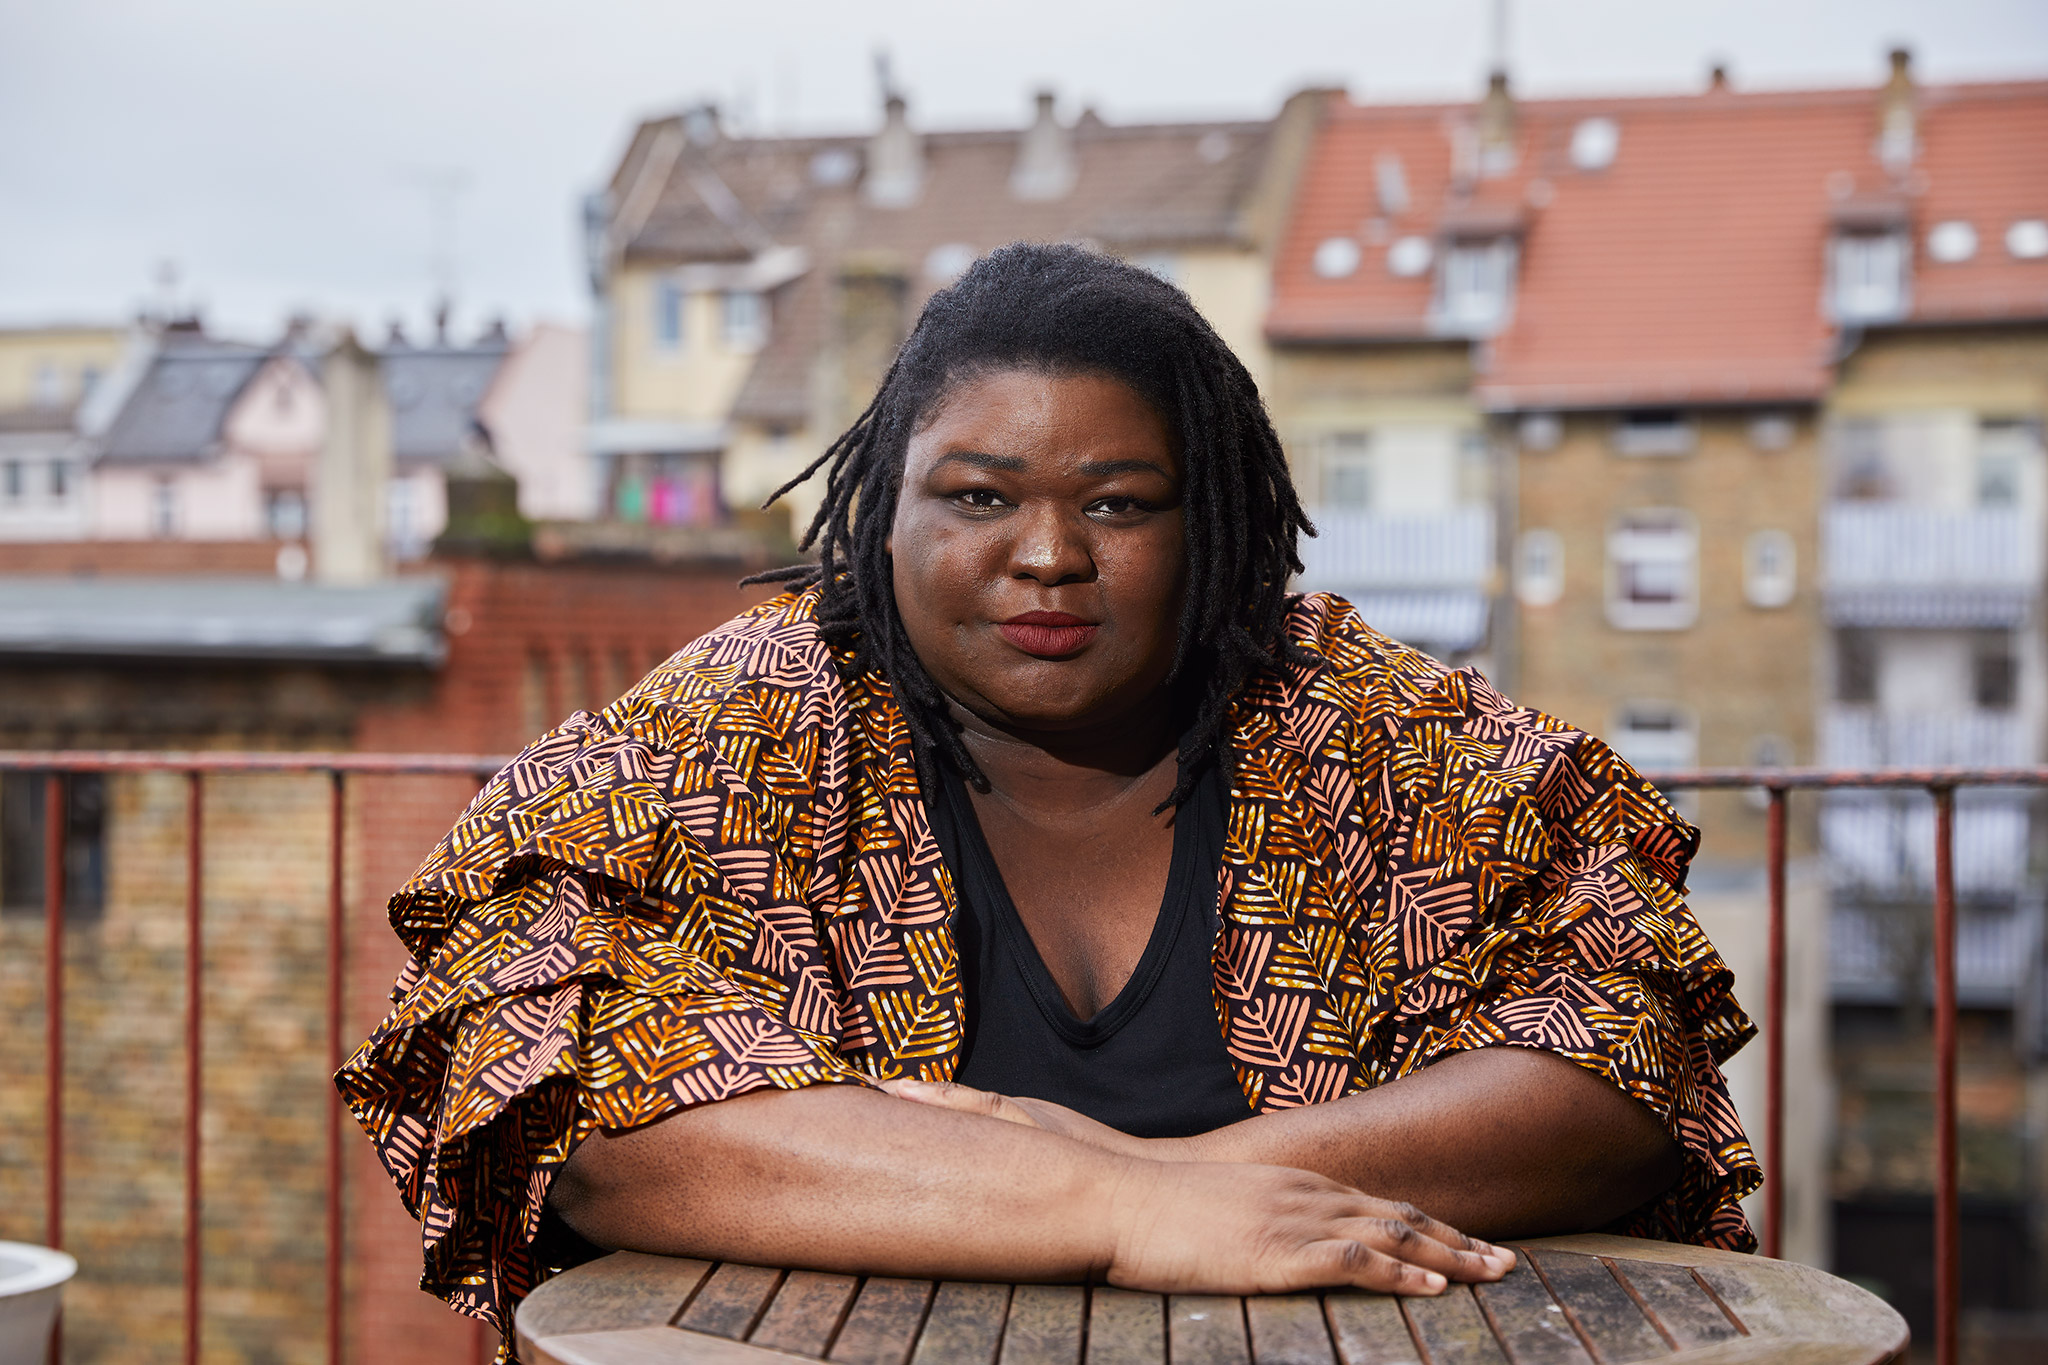 Portrait von Christelle Nkwendja-Ngnoubamdjum, einer dark-skinned Schwarzen fetten Cis-Hetero Frau auf einem Balkon vor einer Häuserfassade. Sie trägt schulterlange schwarze Rastazöpfe und eine gemusterte Jacke über einem schwarzen Shirt.